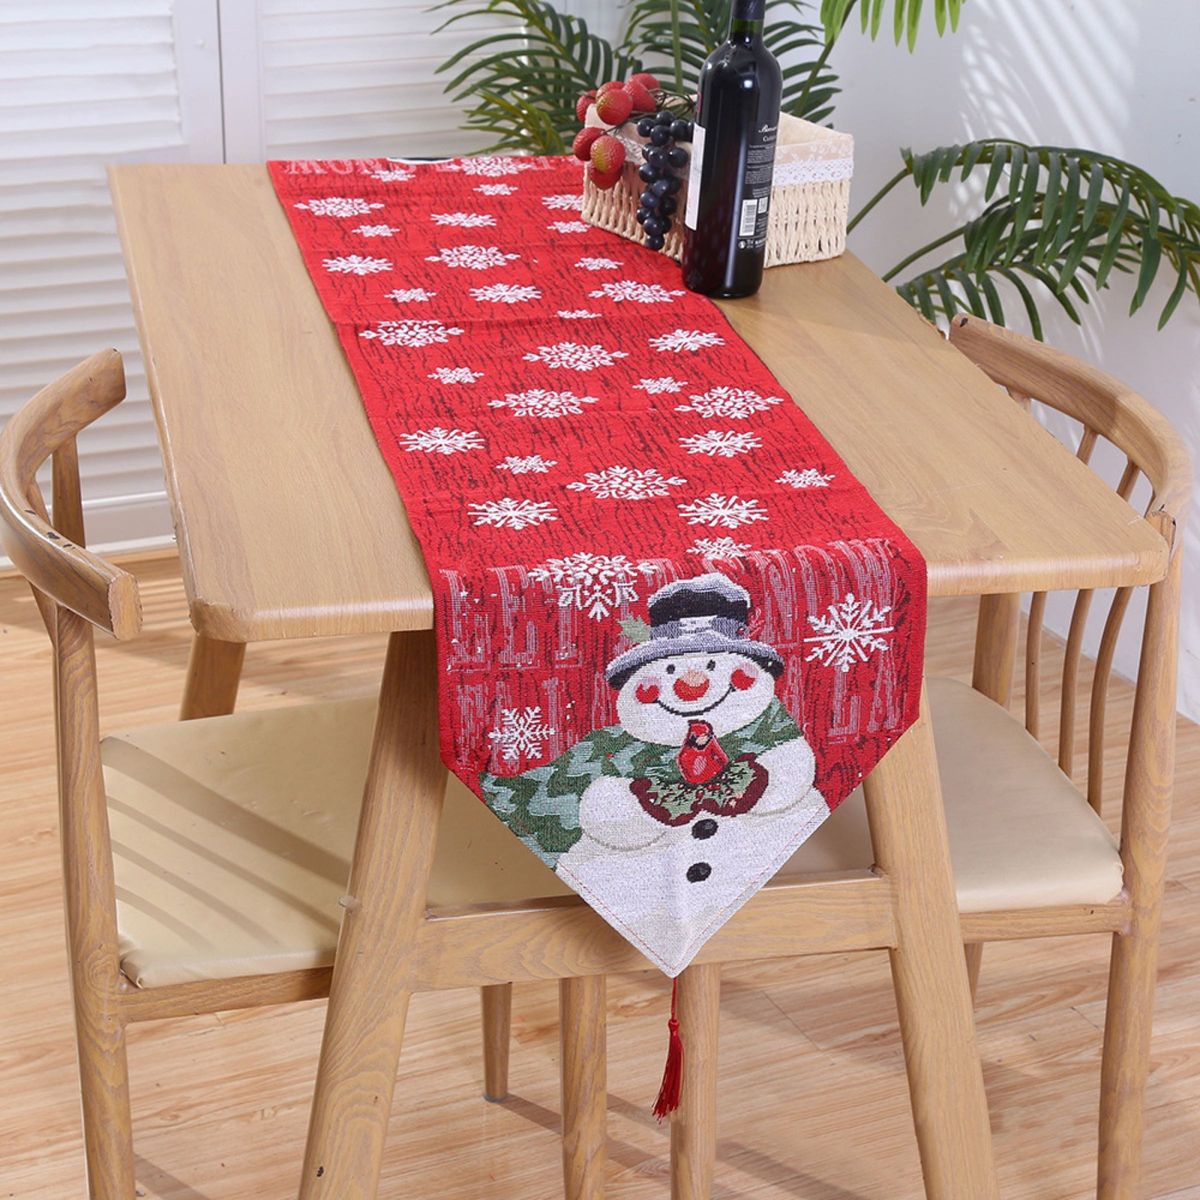 テーブルランナー 雪だるま クリスマス テーブルクロス スノーマン パーティー 刺繍 テーブルコーディネート テーブルセンター